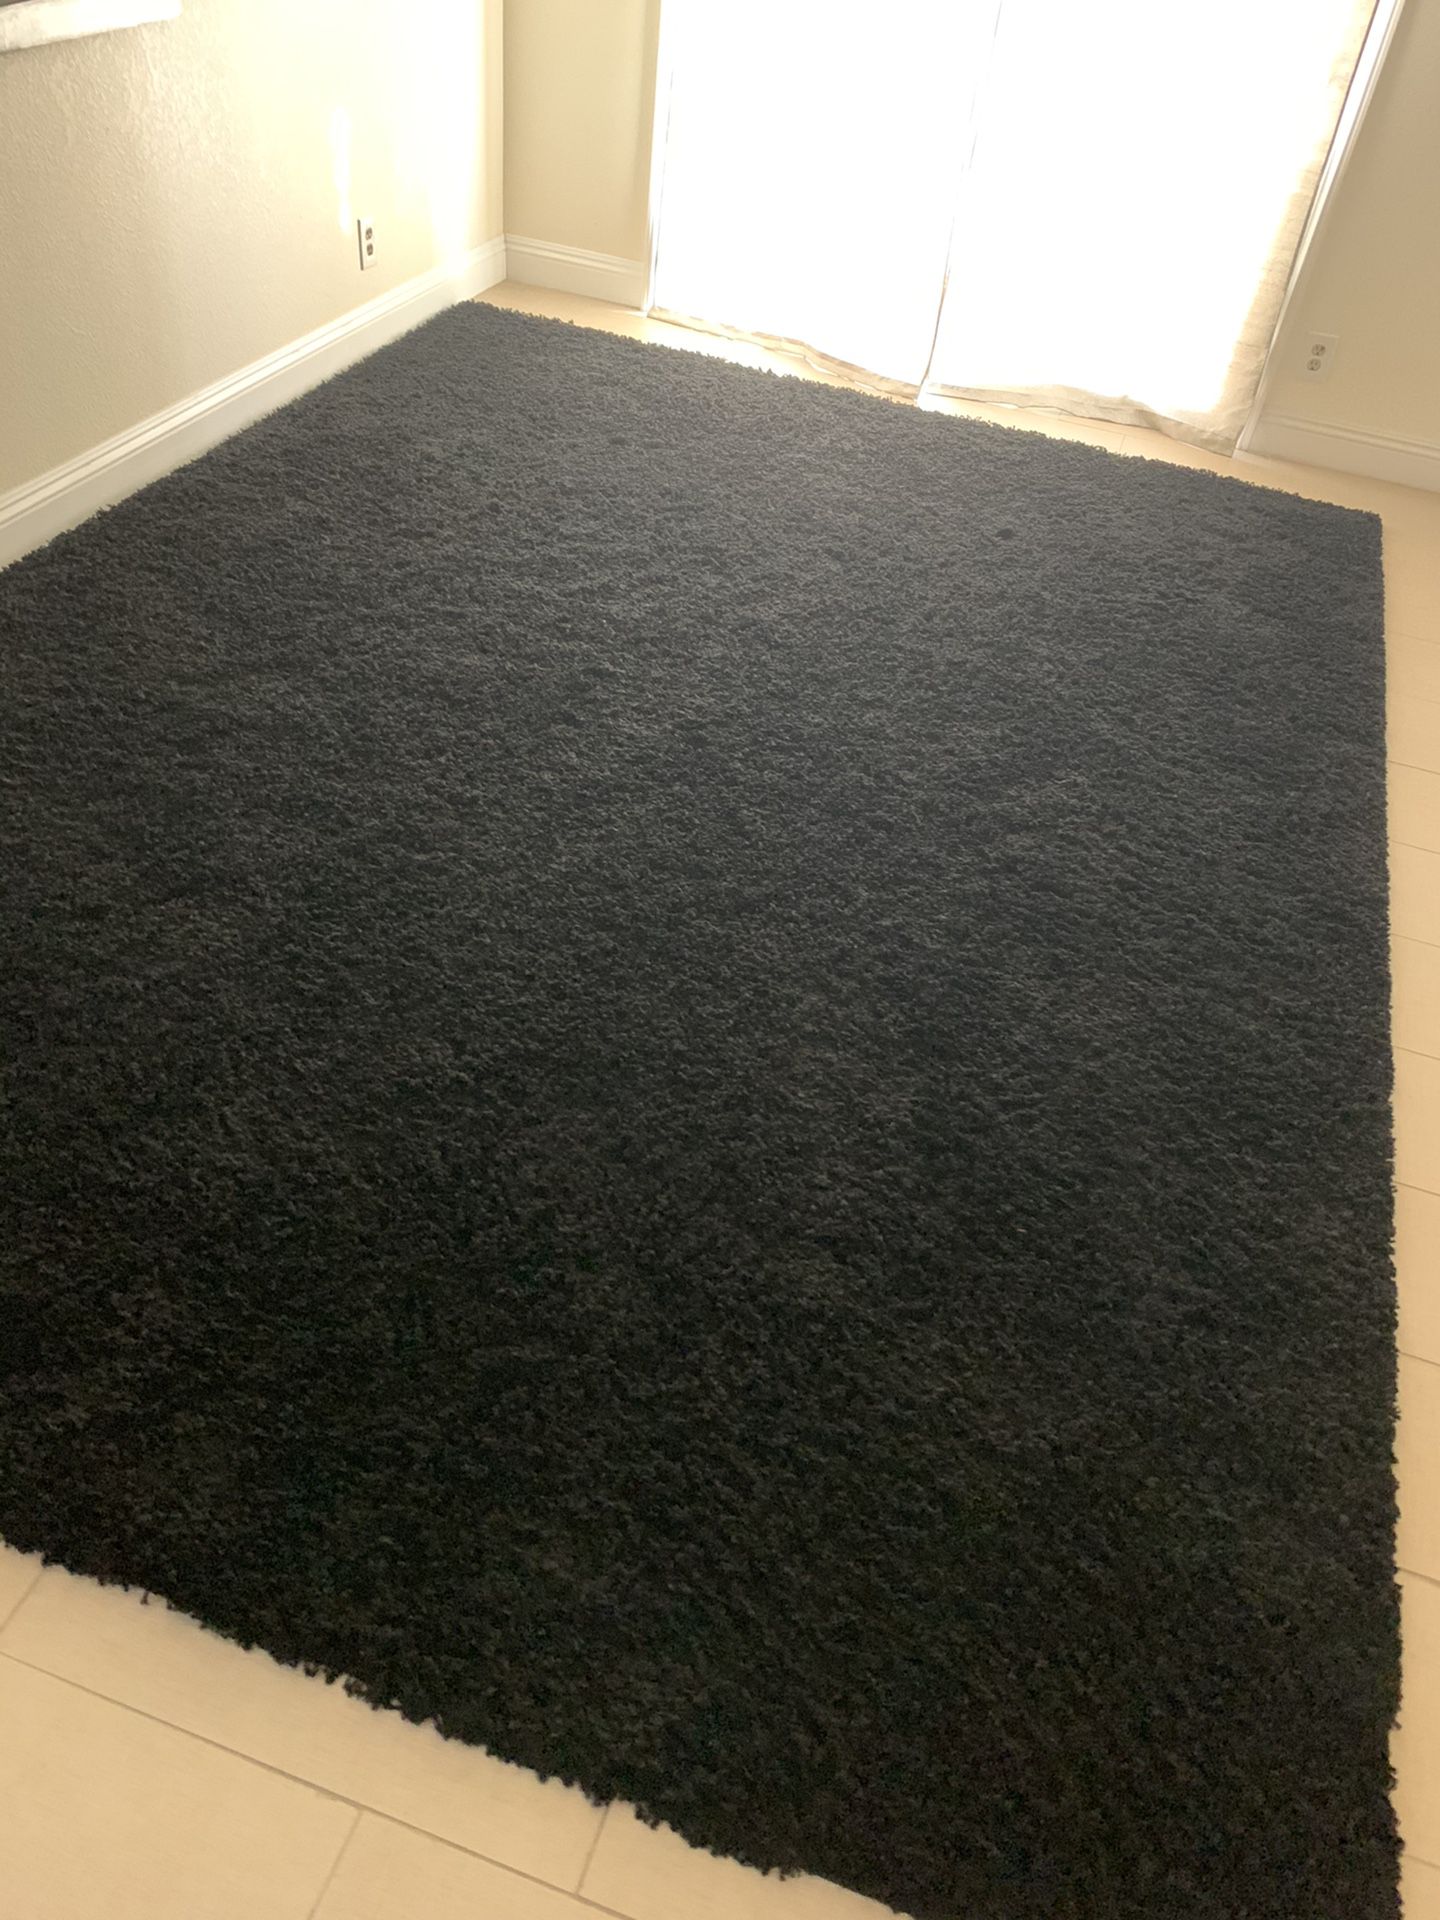 Big new black carpet